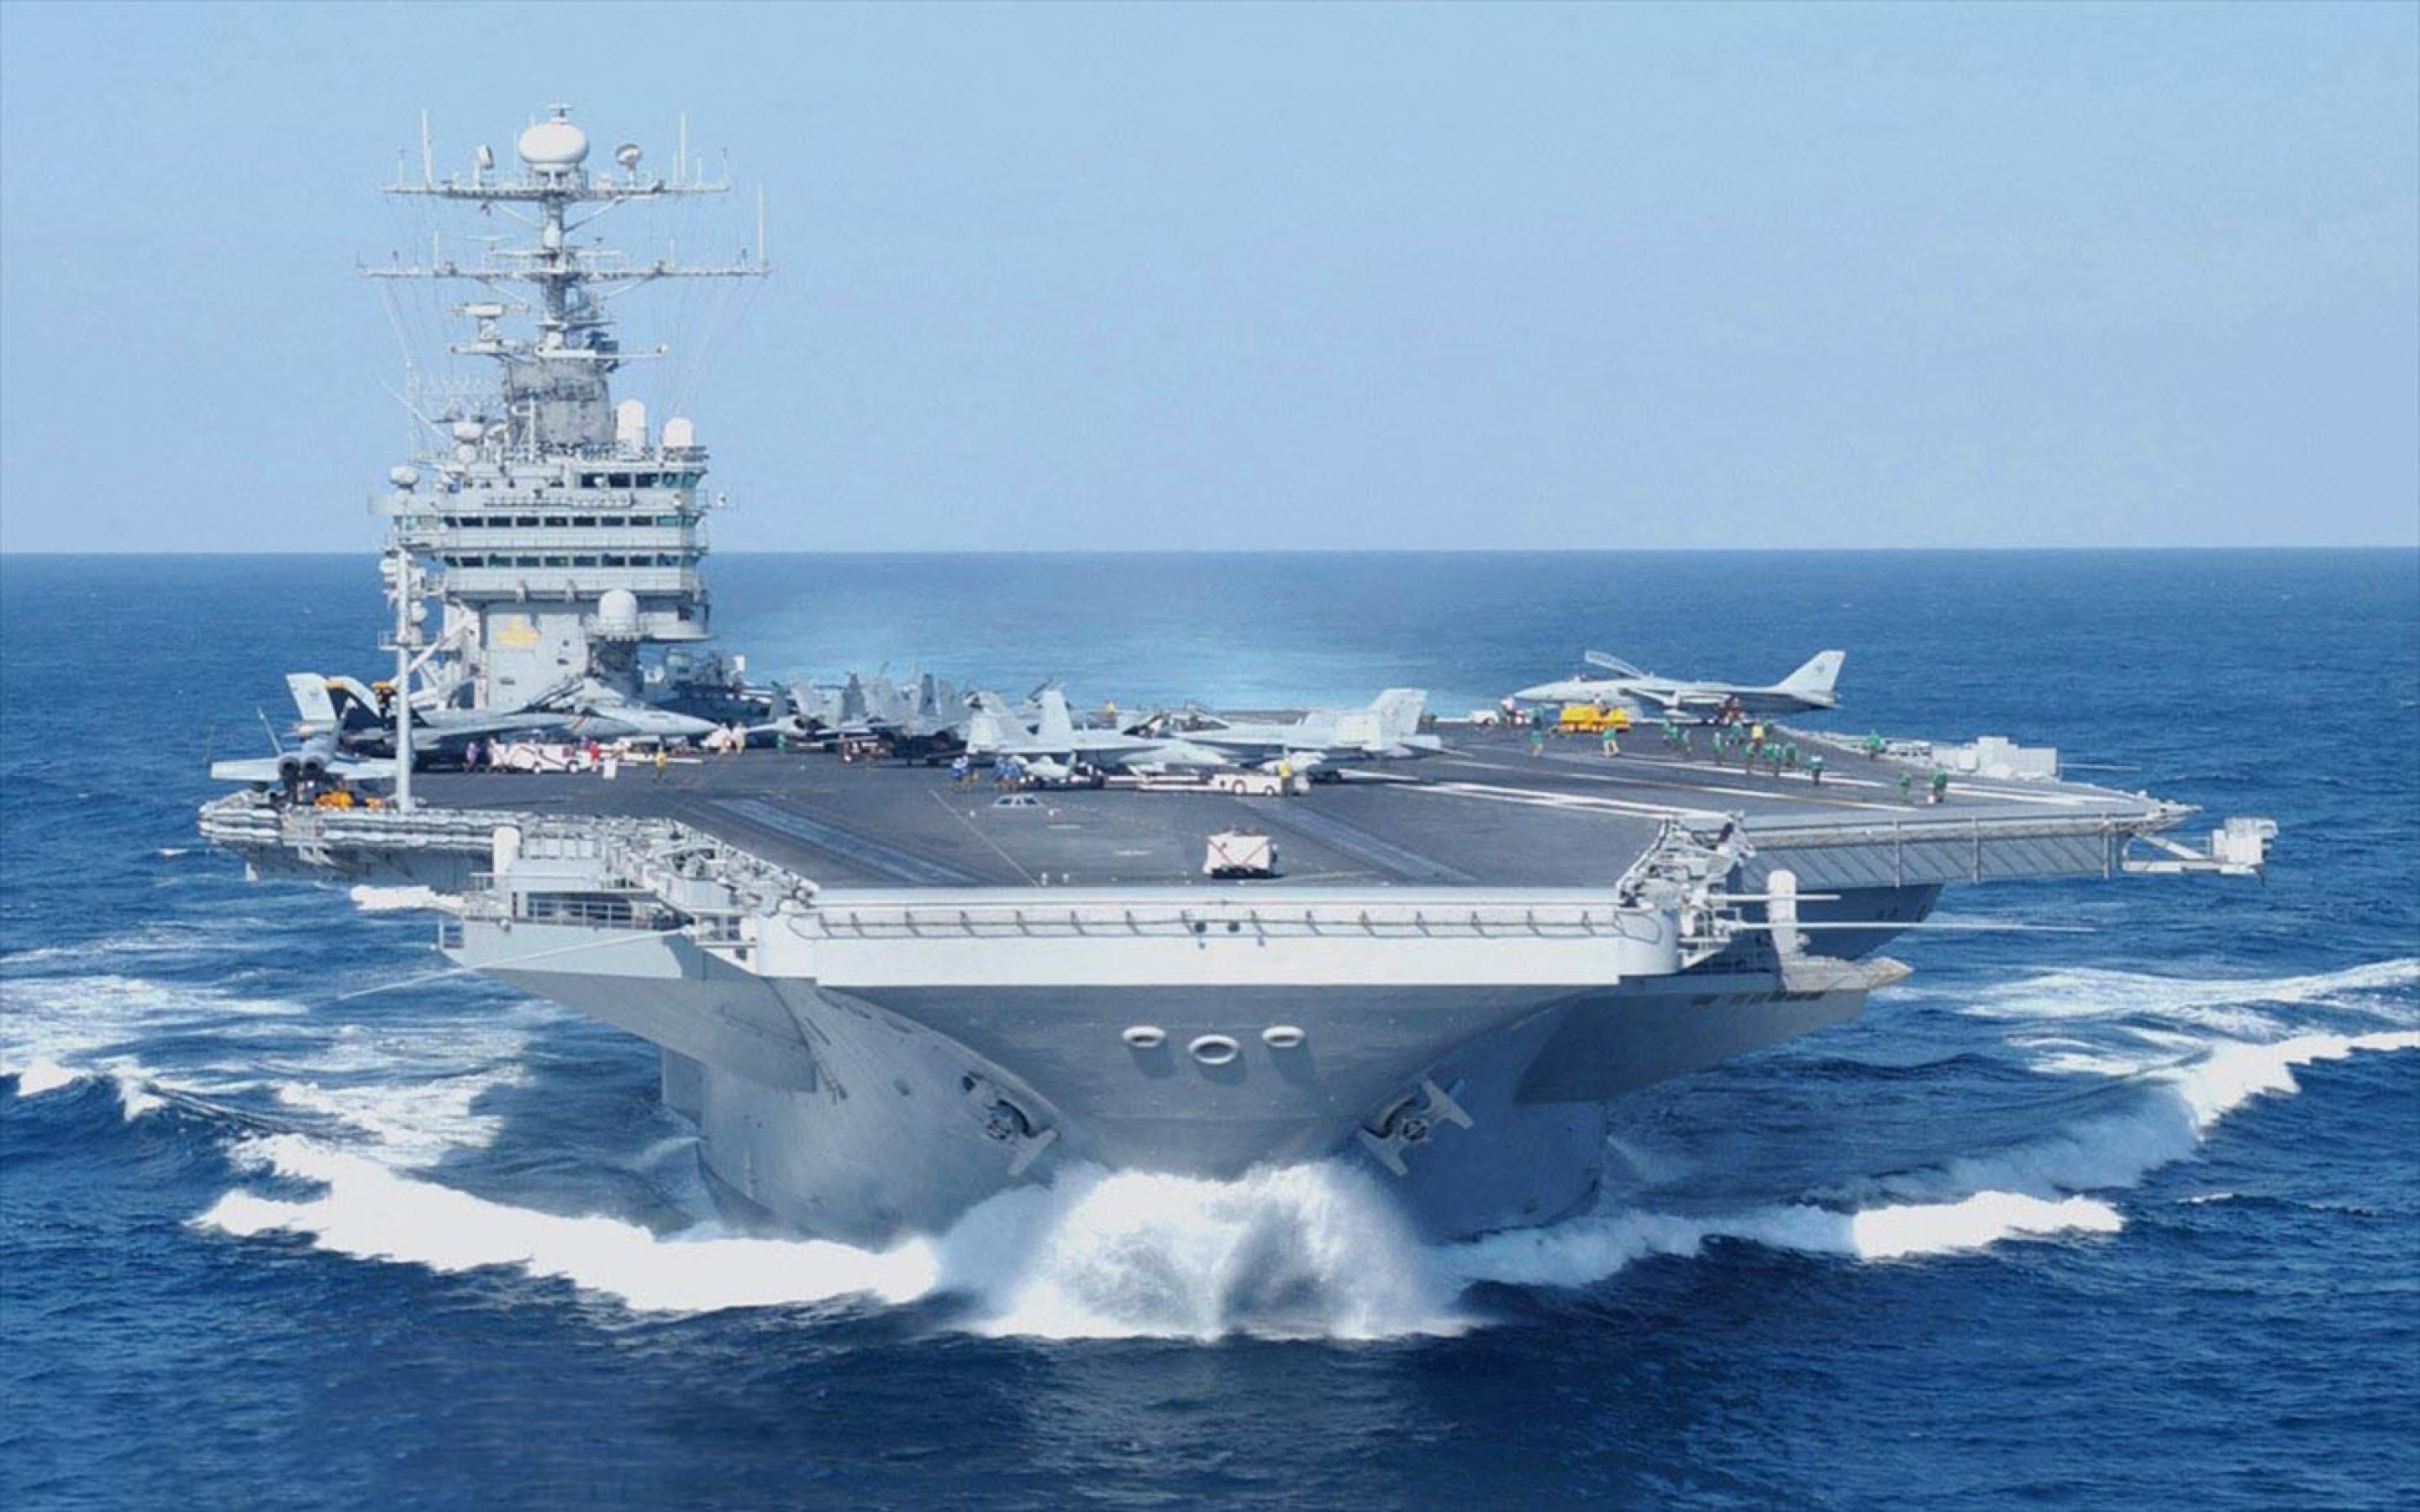 2880x1800 Aircraft Carrier Wallpapers | Navy aircraft carrier, Us navy aircraft, Aircraft carrier